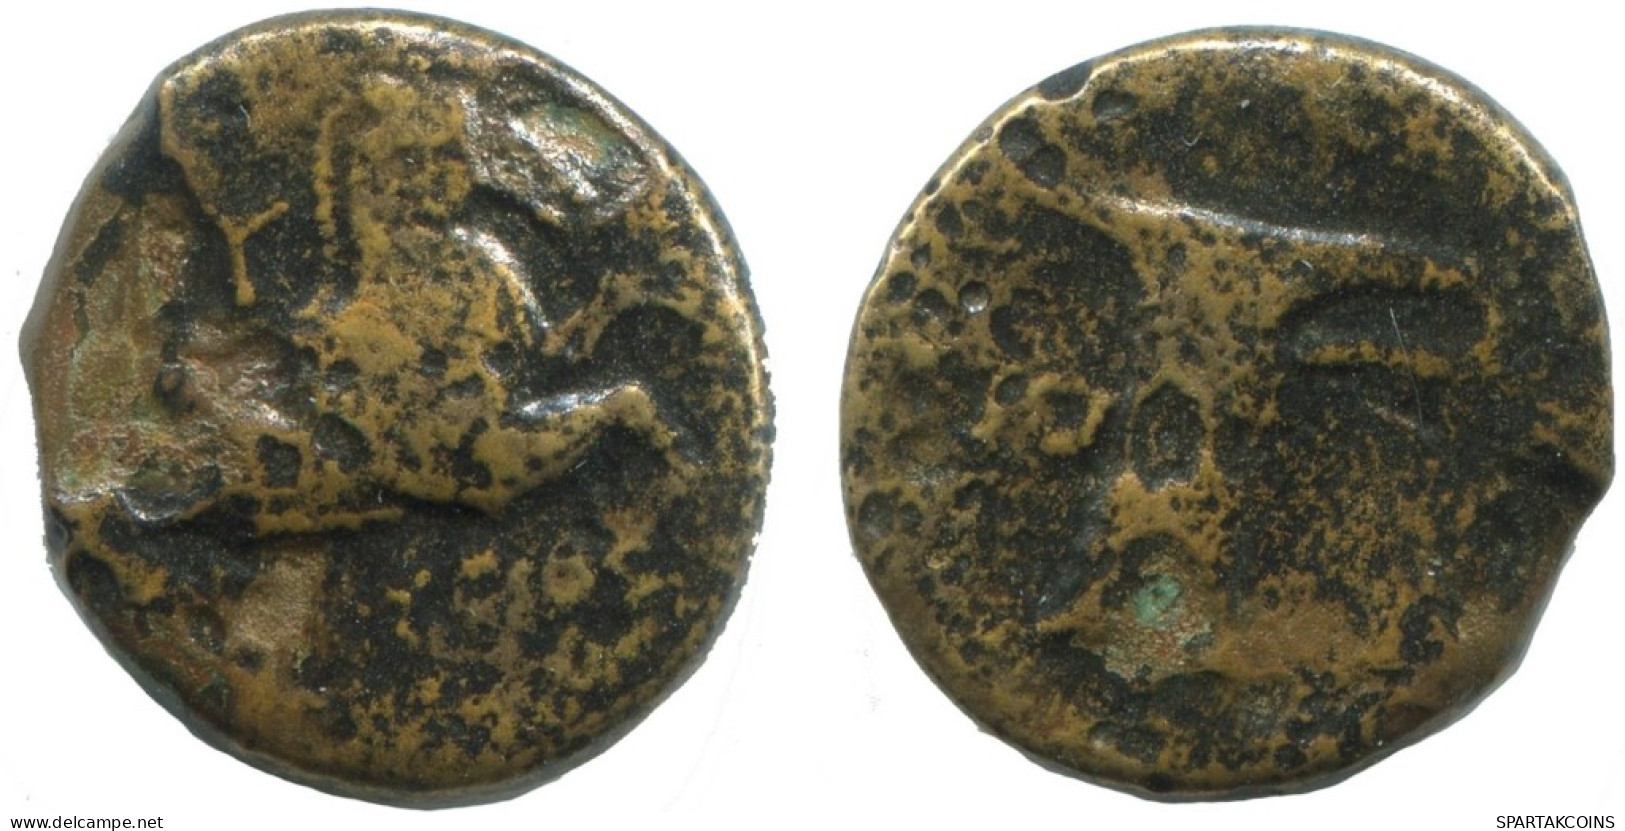 AIOLIS KYME HORSE SKYPHOS Antike GRIECHISCHE Münze 3.9g/16mm #AG033.12.D.A - Griechische Münzen